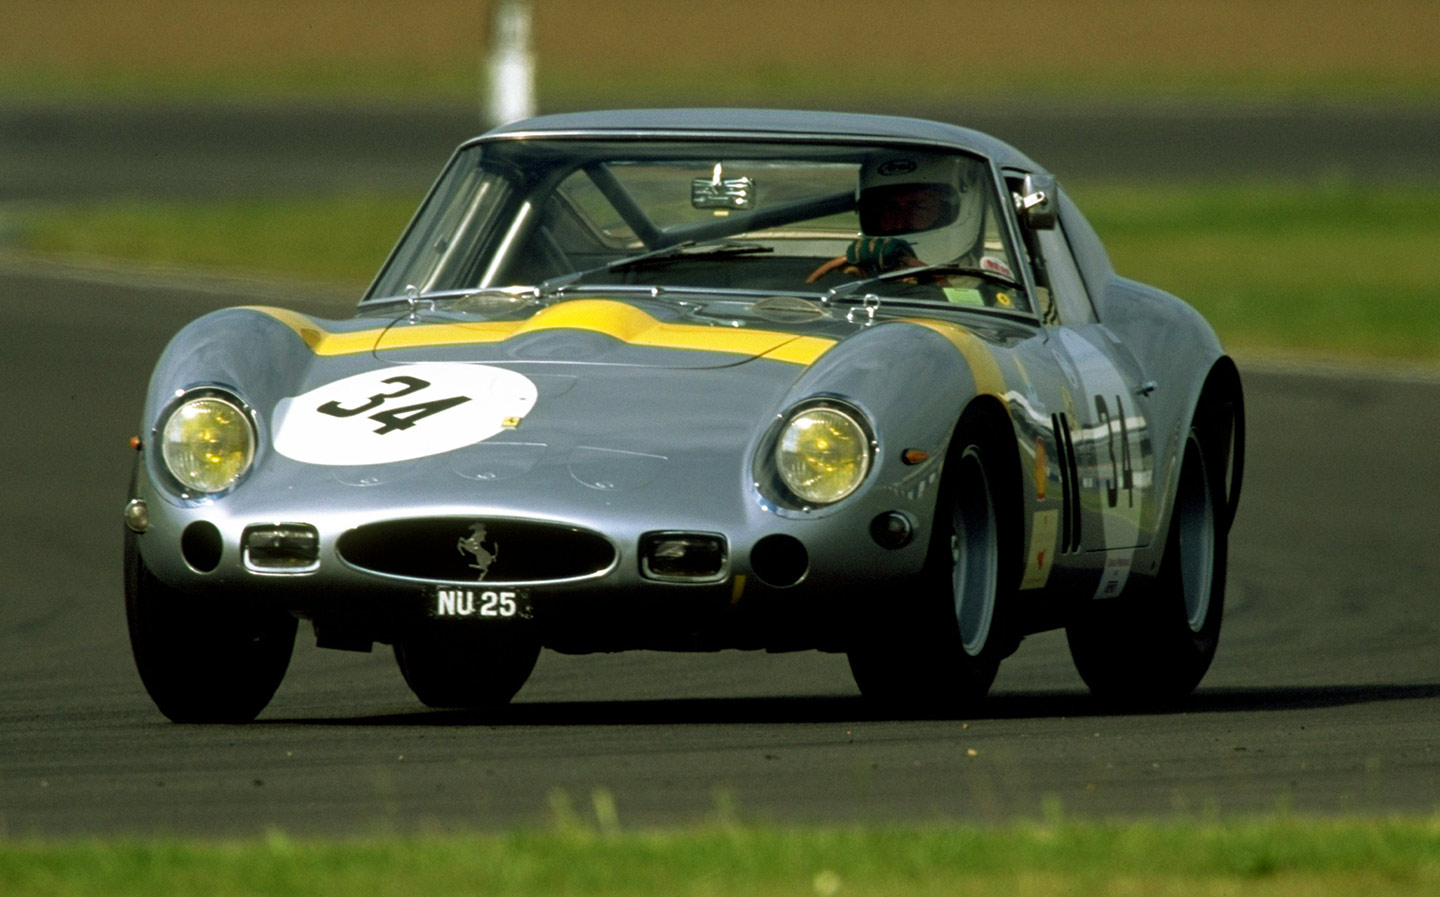 Classic 1963 Ferrari 250 GTO sold for record £53m